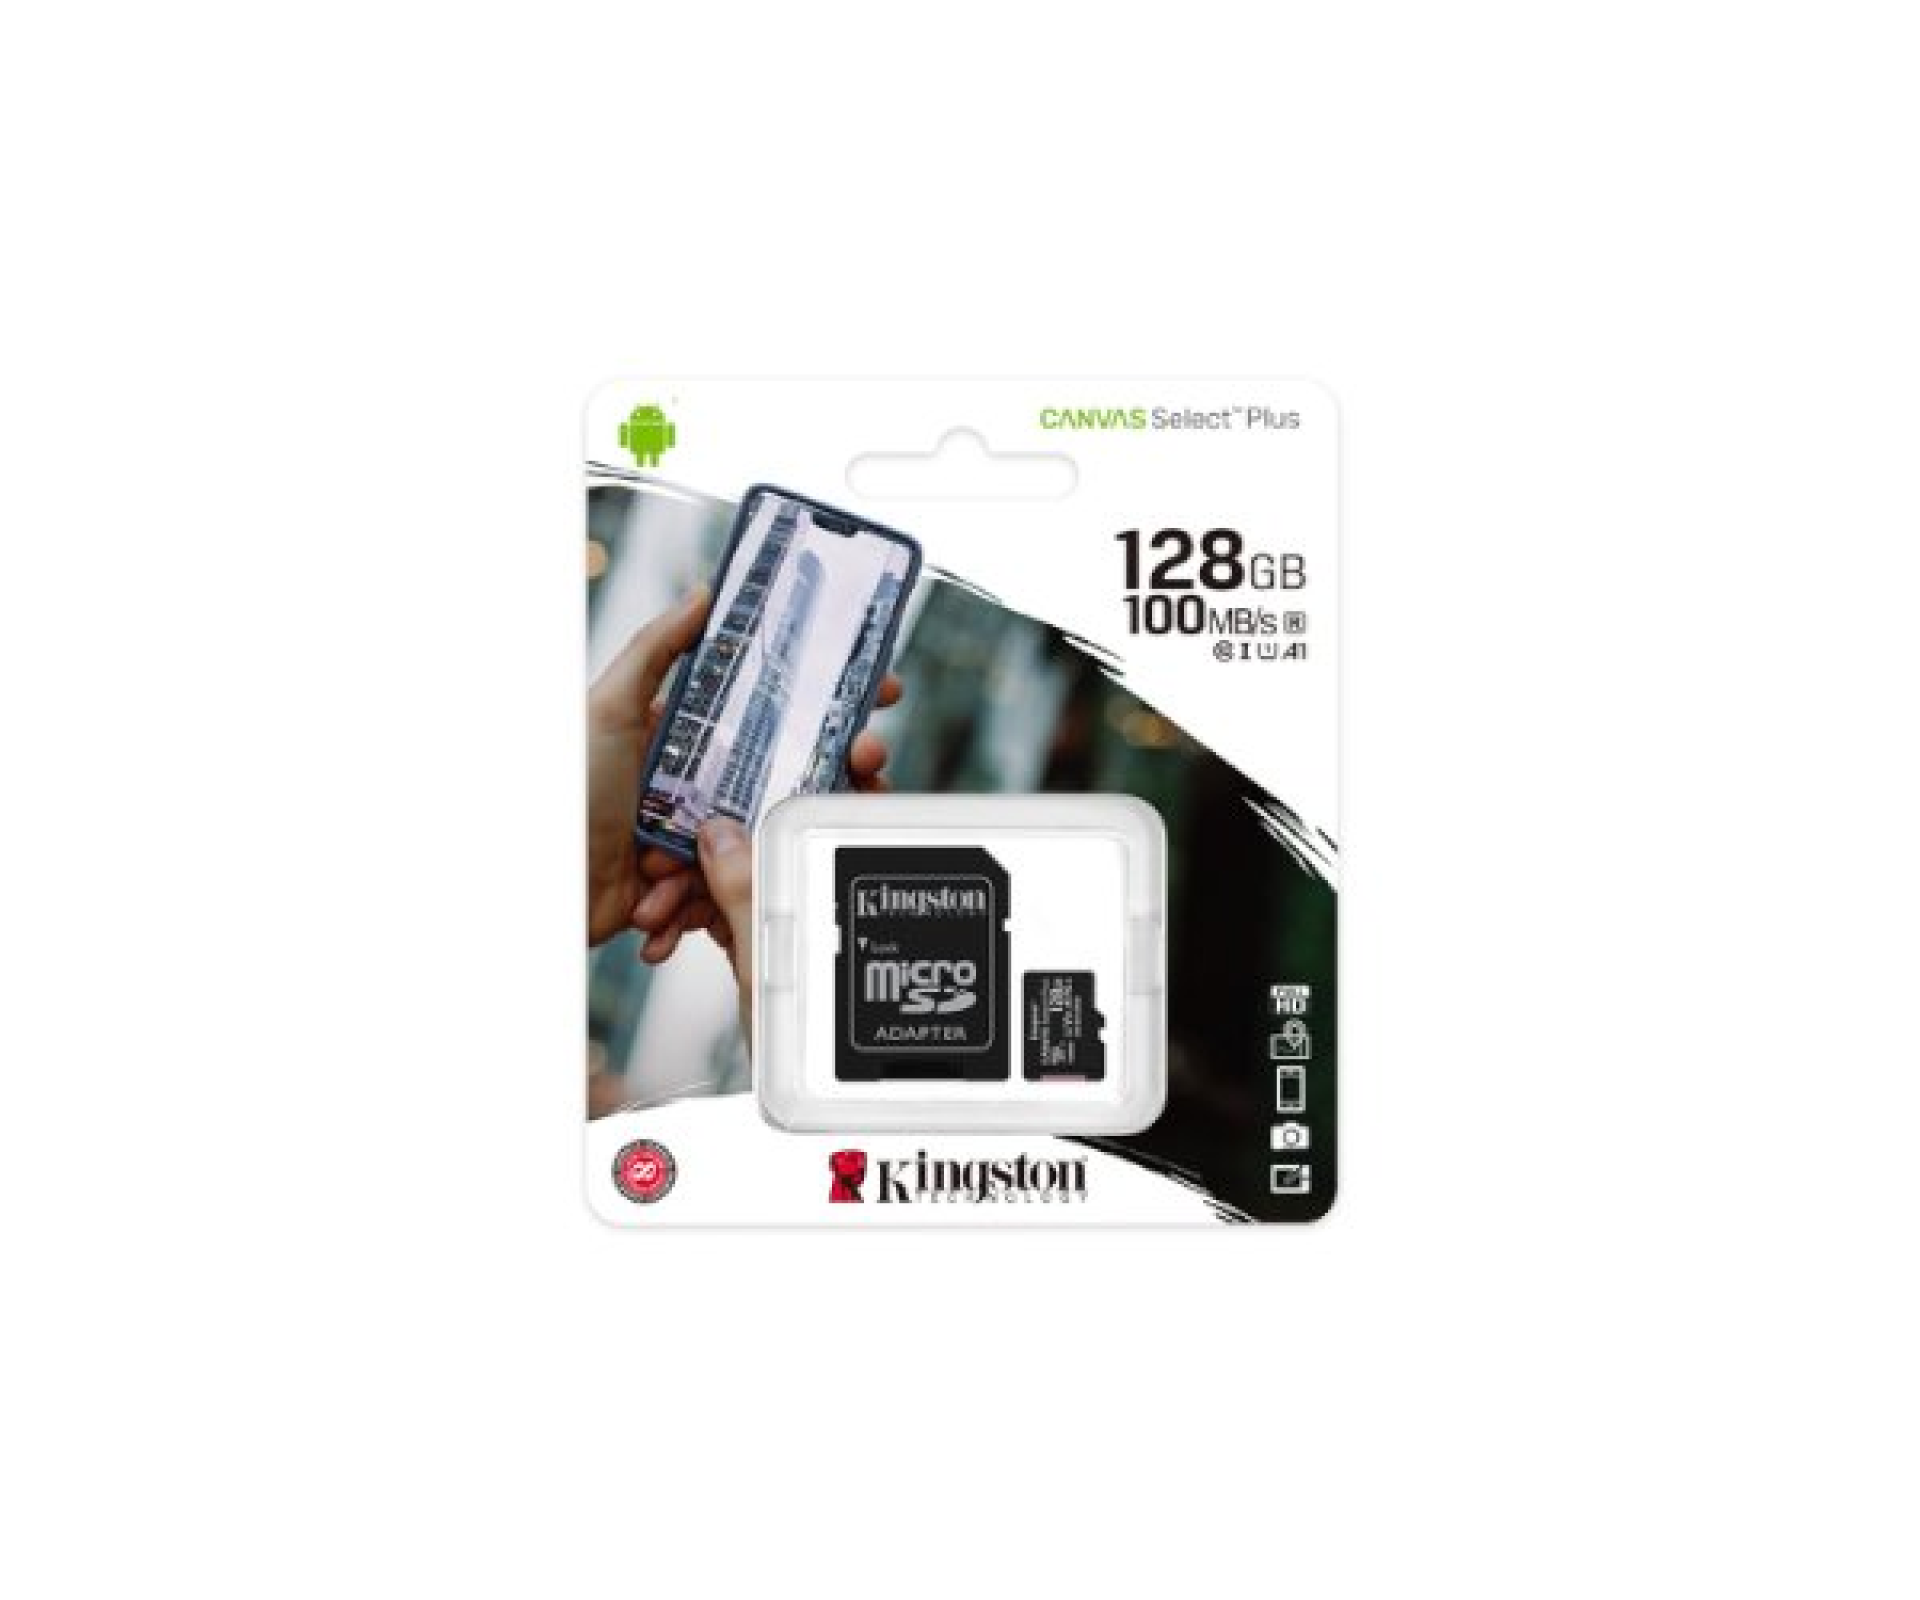 כרטיס זכרון Kingston 128GB UHS-1 Canvas Select Plus Adapter incl